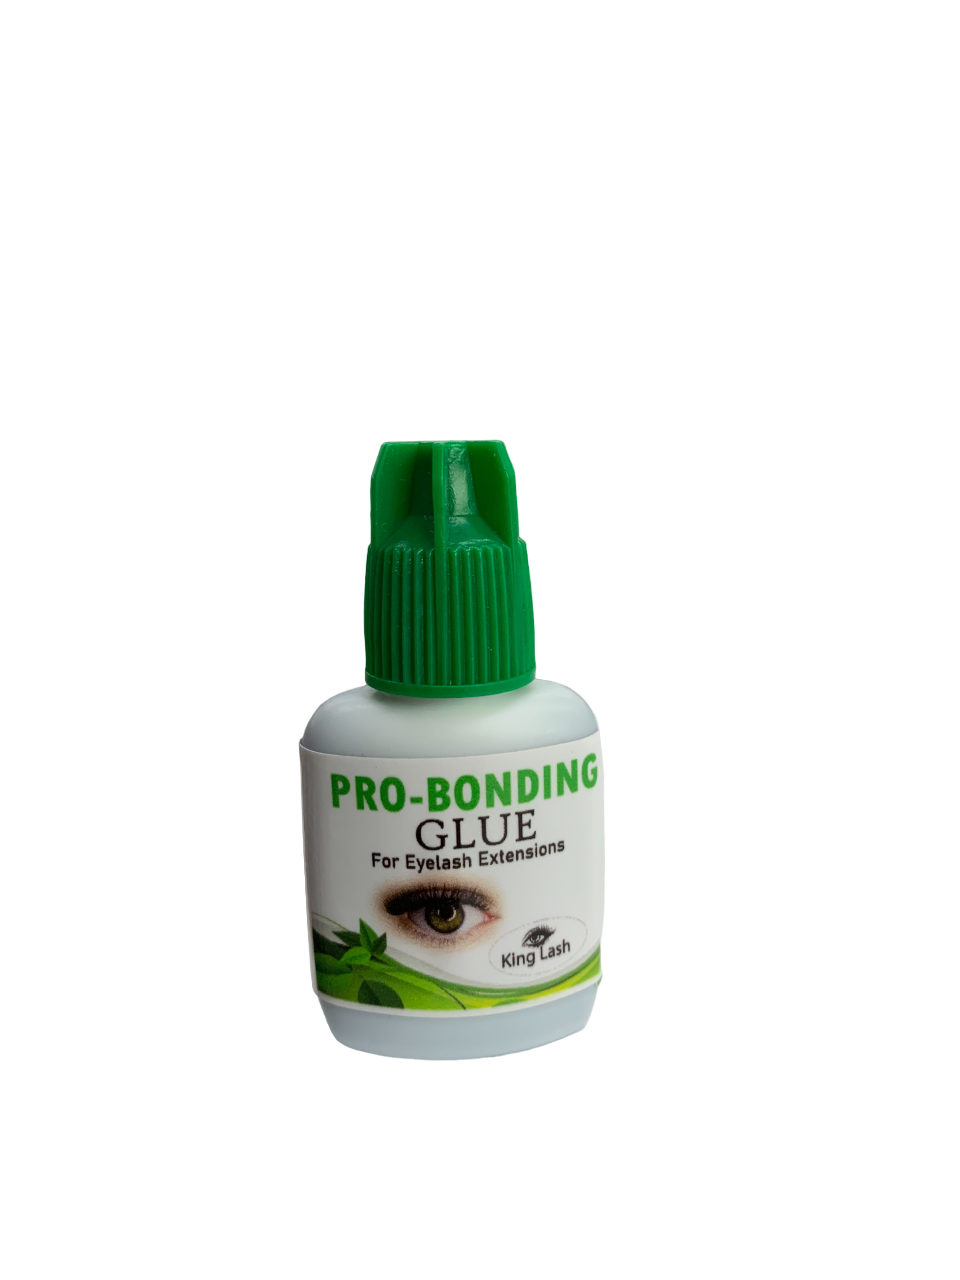 King Lash Pro-Bonding Glue